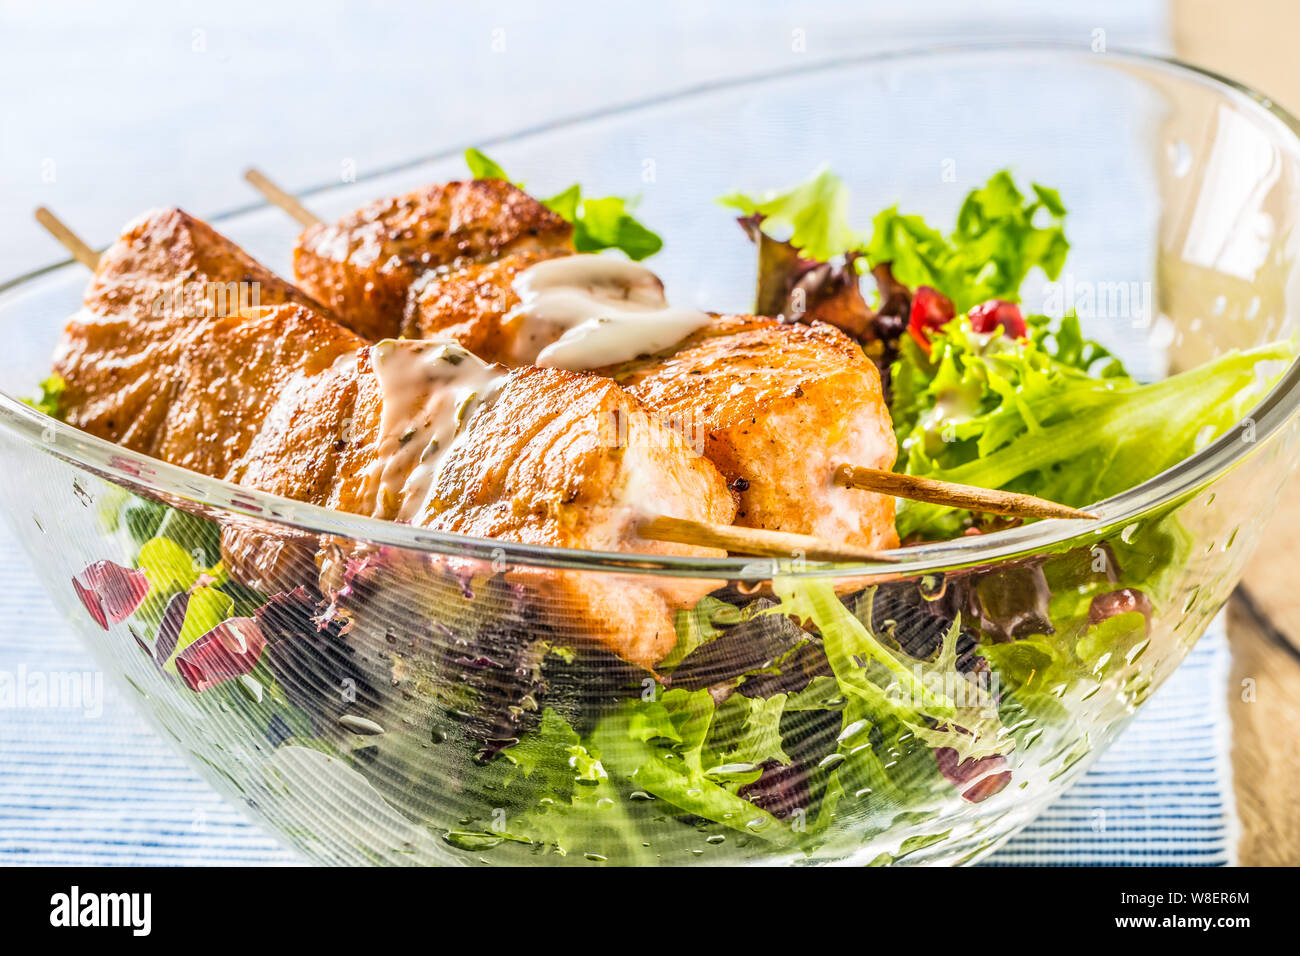 Les brochettes de saumon grillé avec de la laitue d'été salat pomehranate graines huile d'olive et vinaigrette. L'alimentation des poissons en bonne santé avec des fruits et légumes Banque D'Images